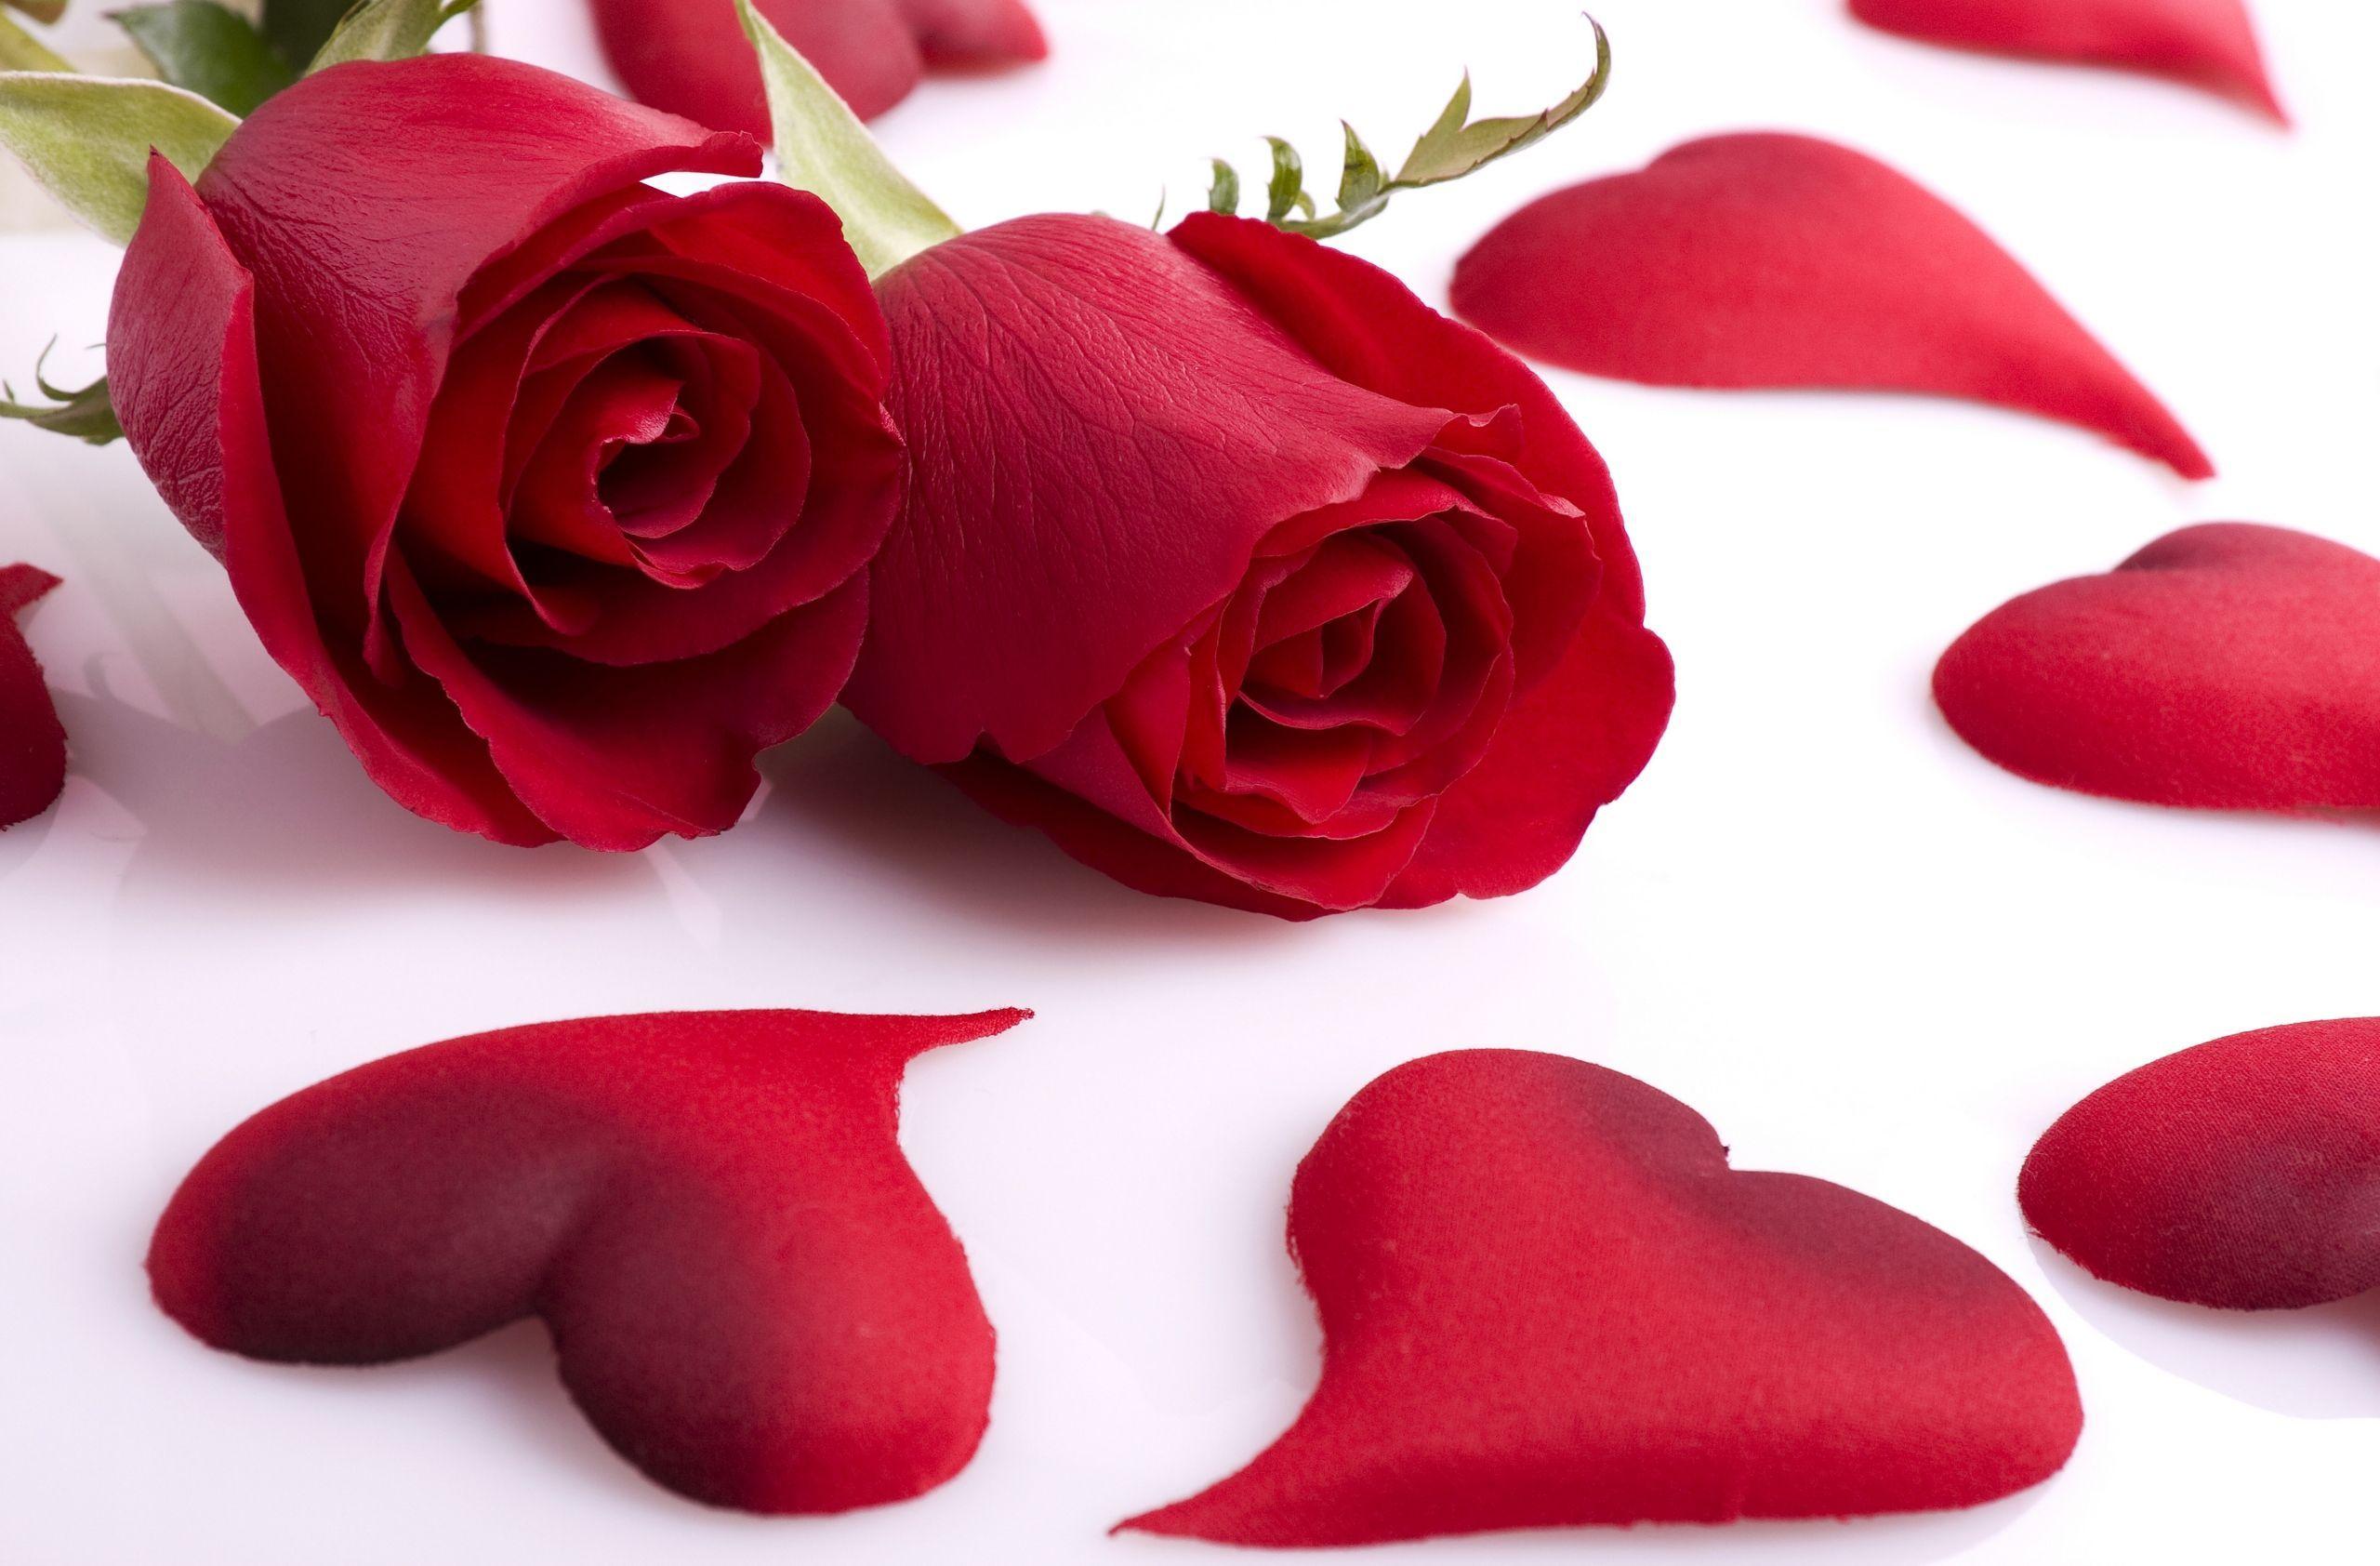 Red Roses & Love Heart Wallpaper